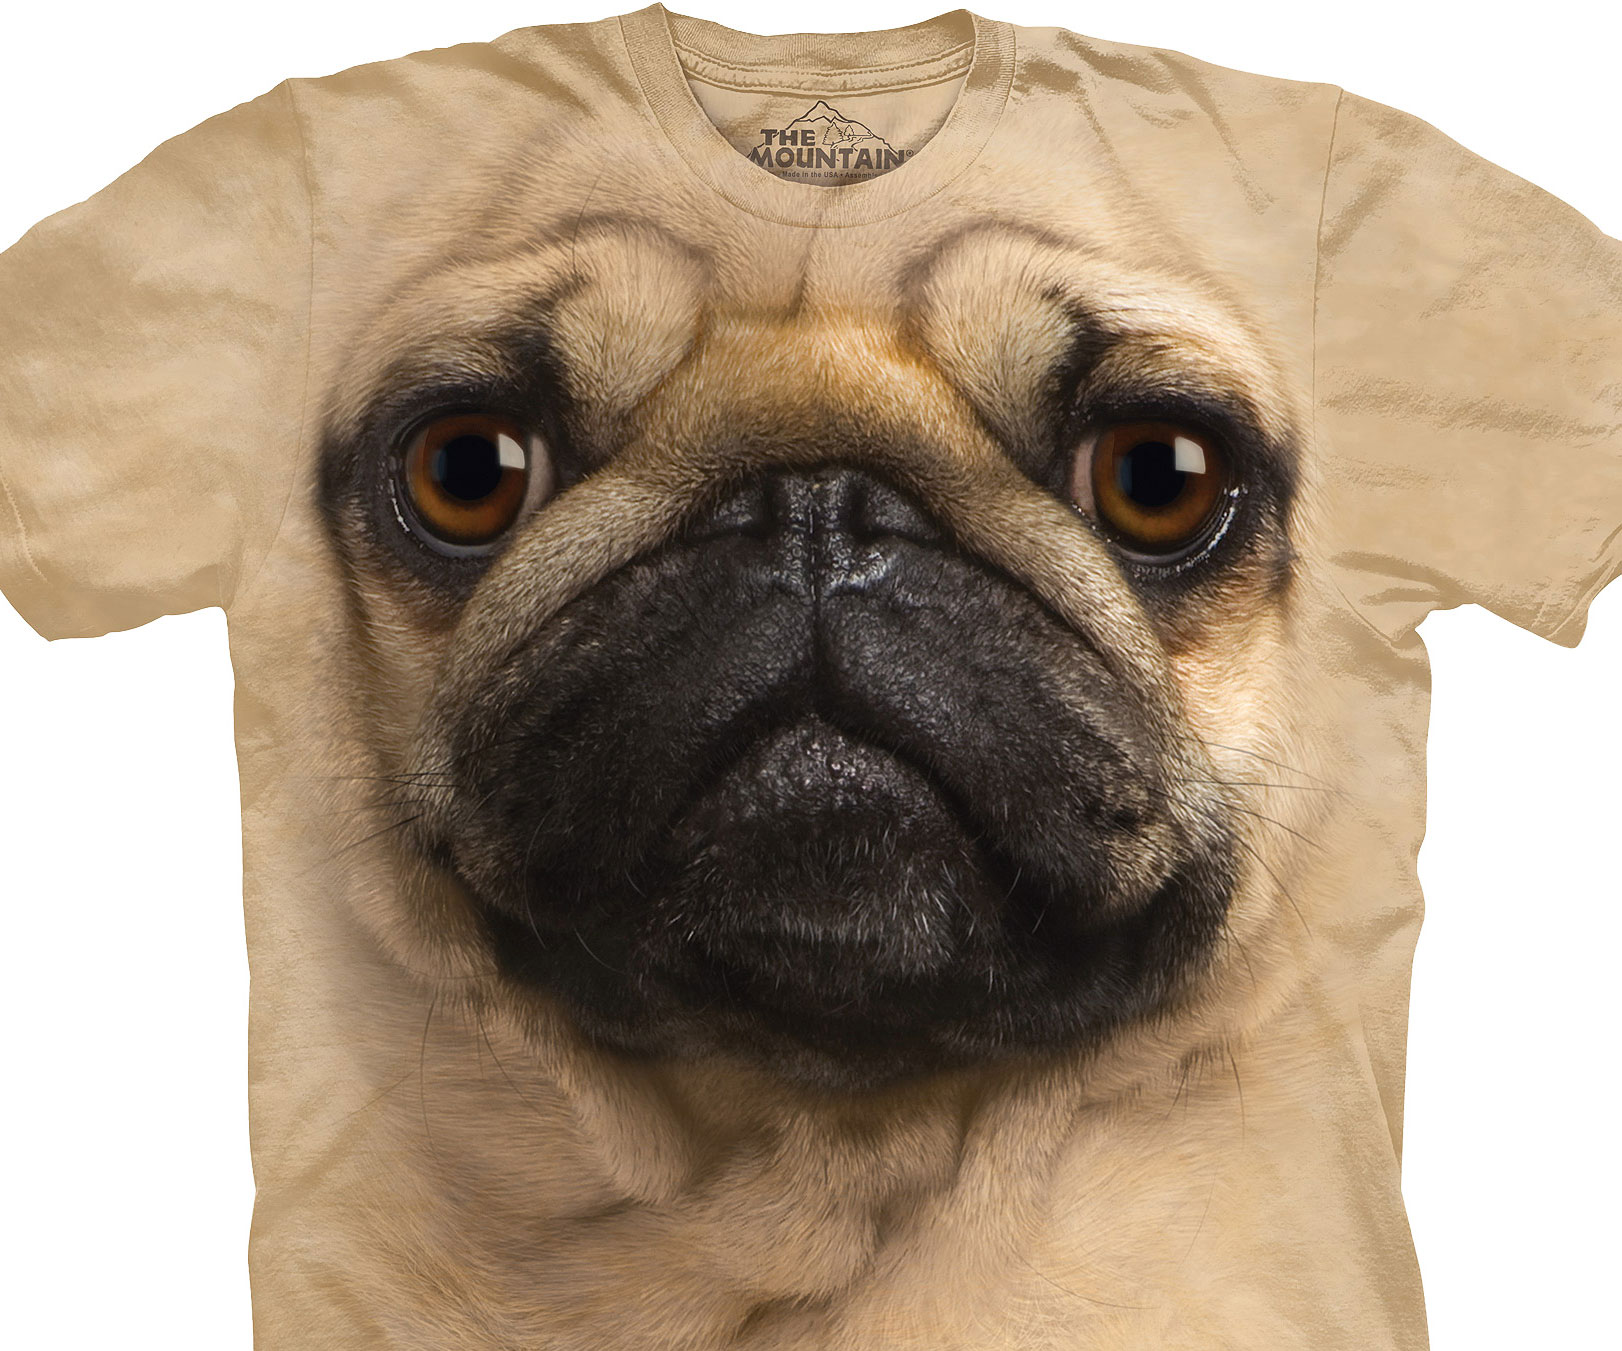 Pug Face Shirt